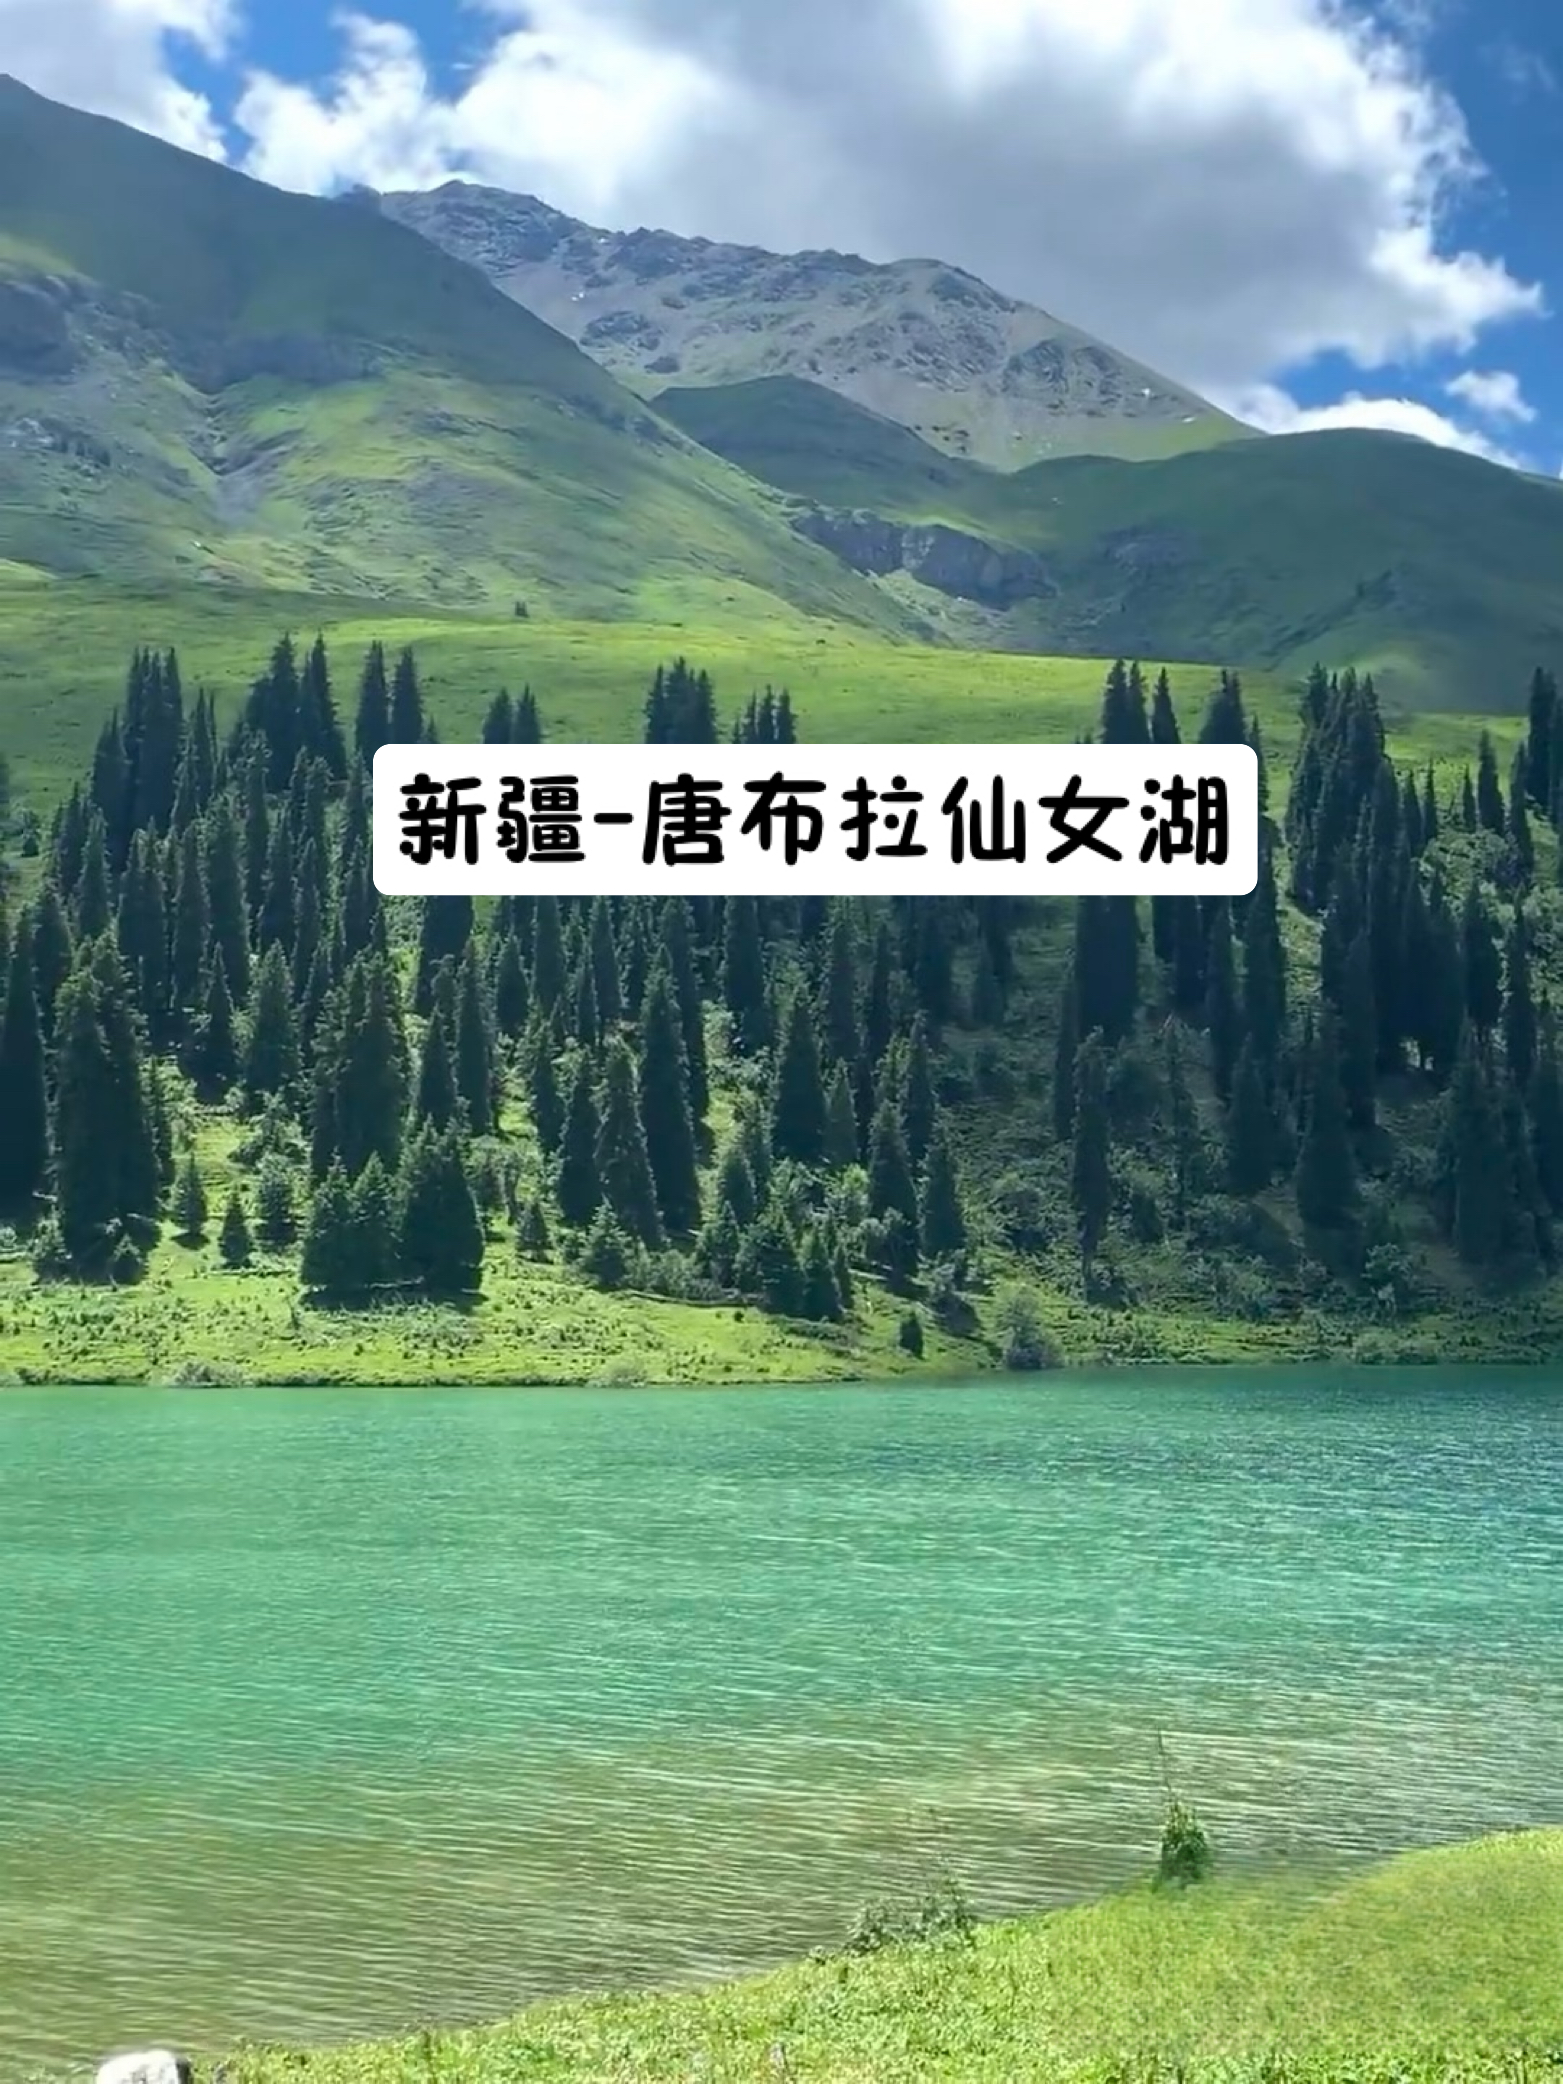 唐布拉仙女湖 来新疆一定要去的小众秘境